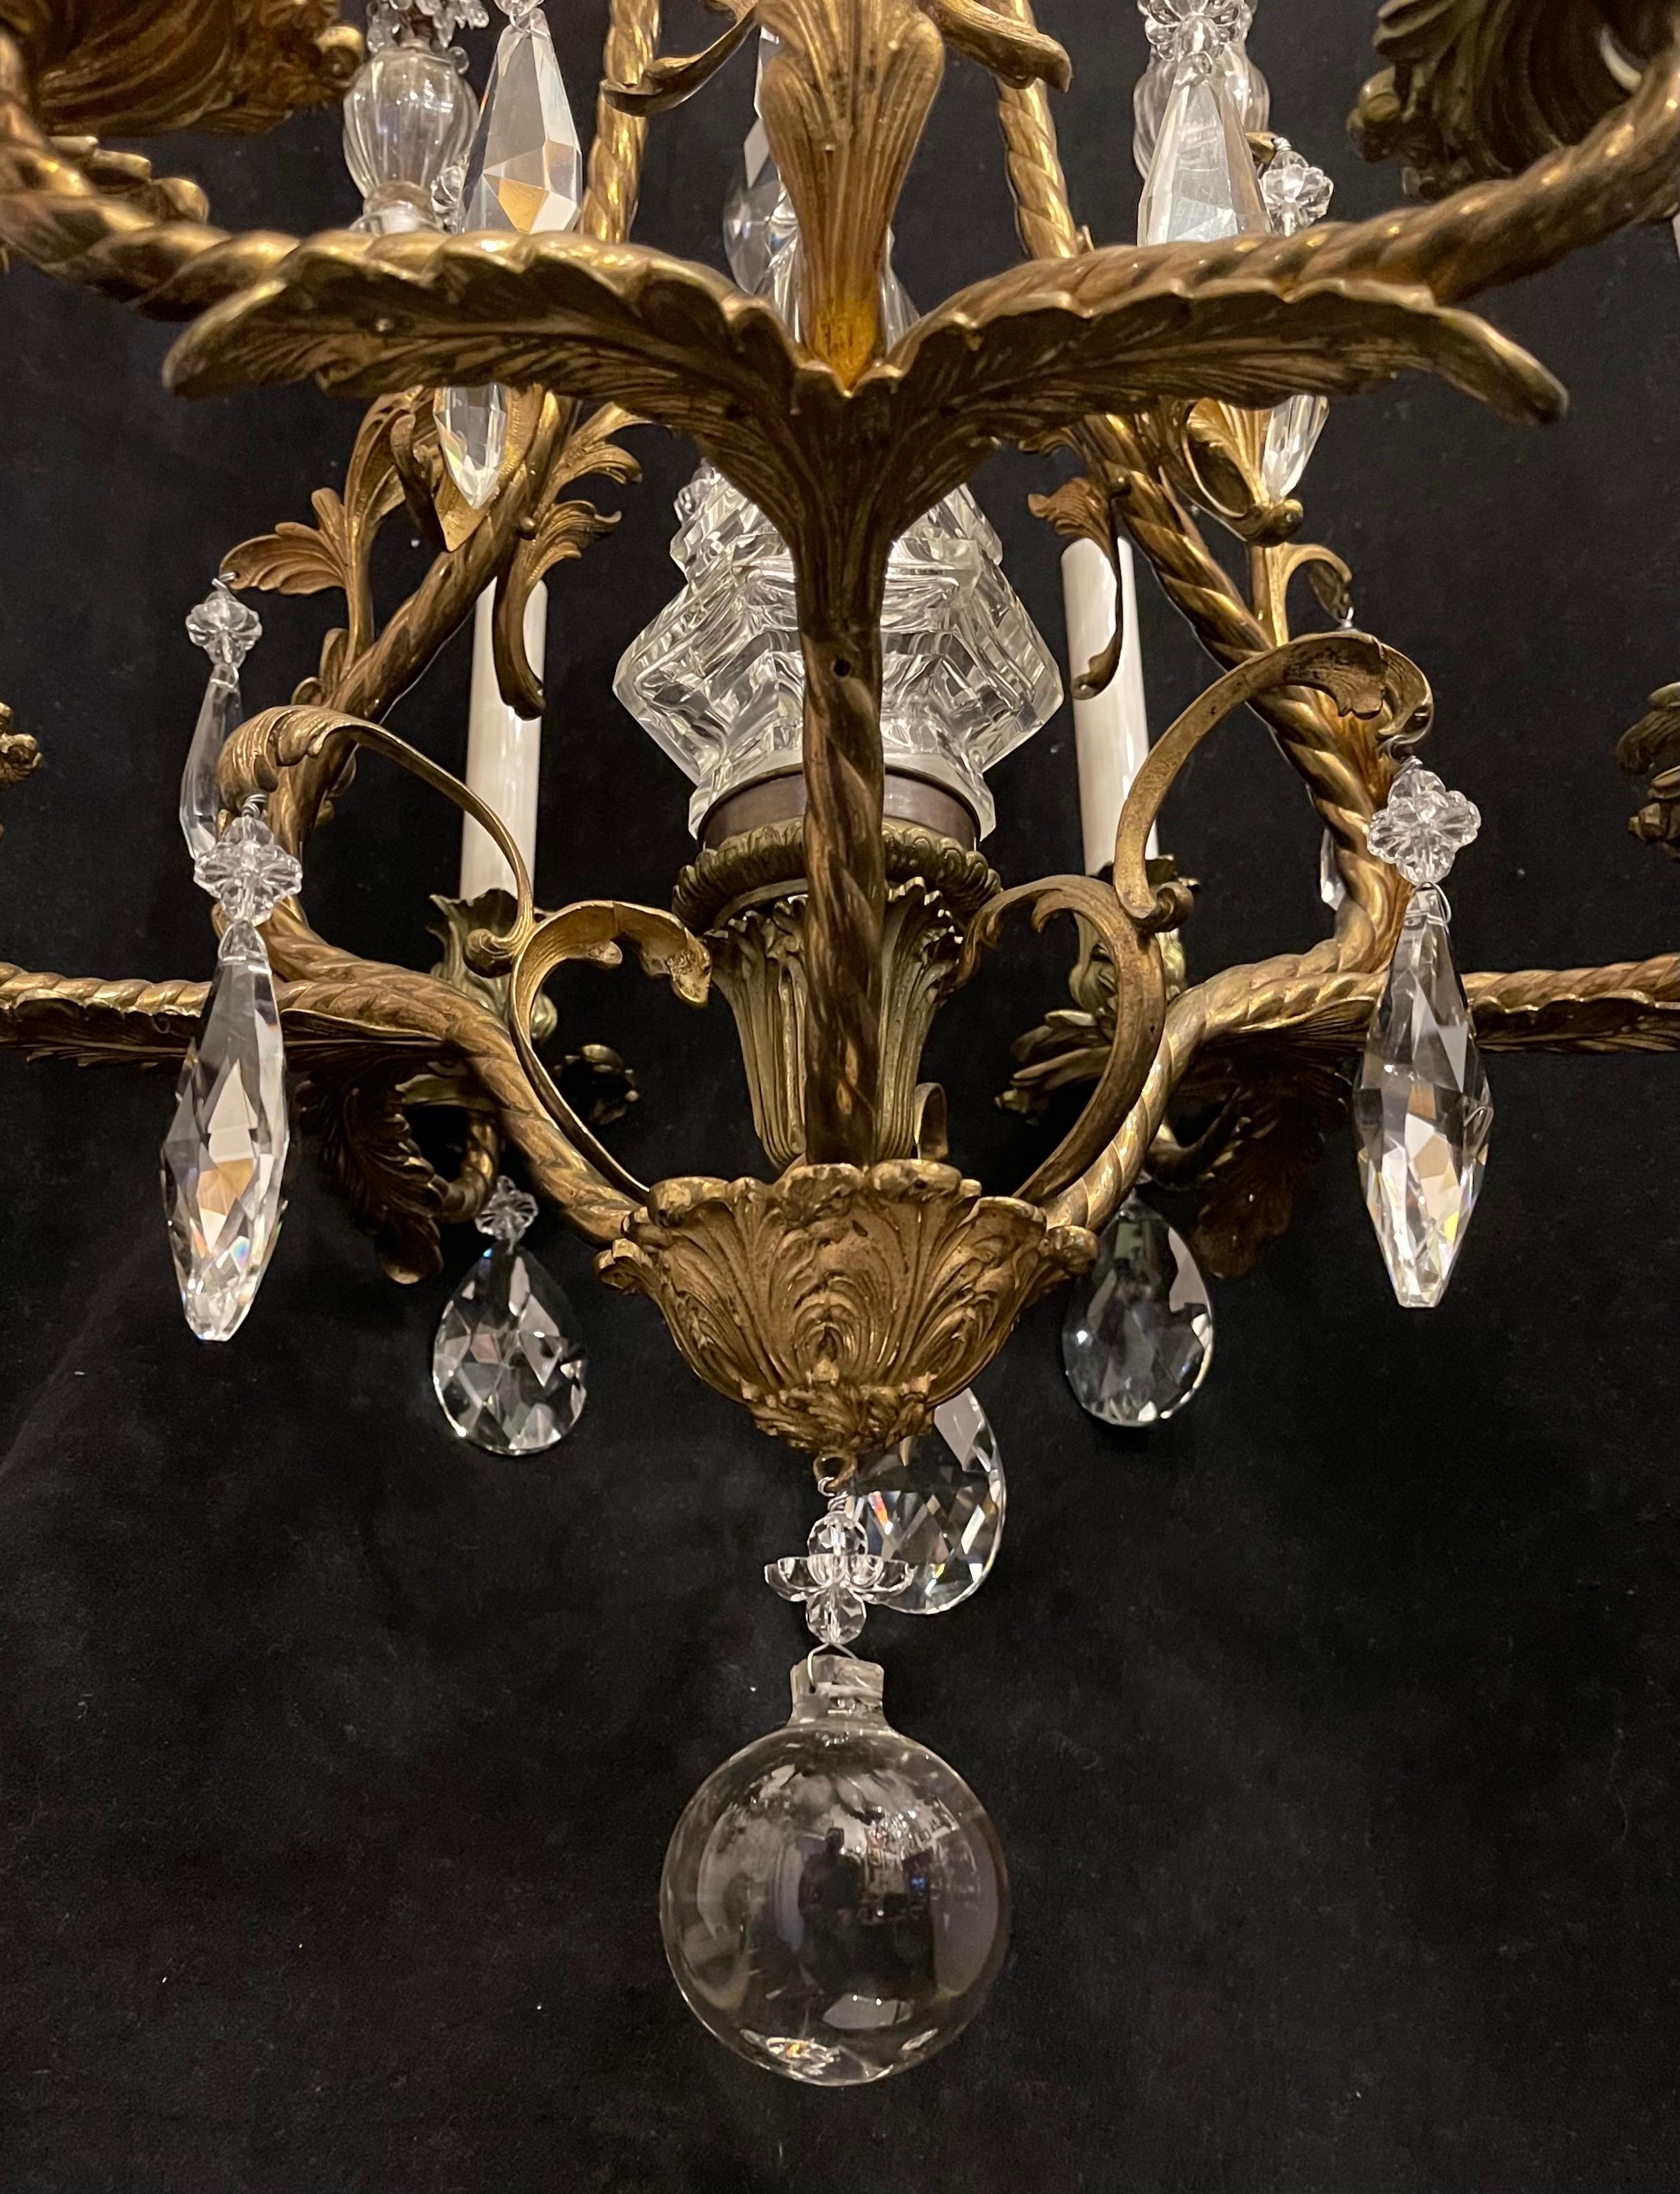 garland on chandelier